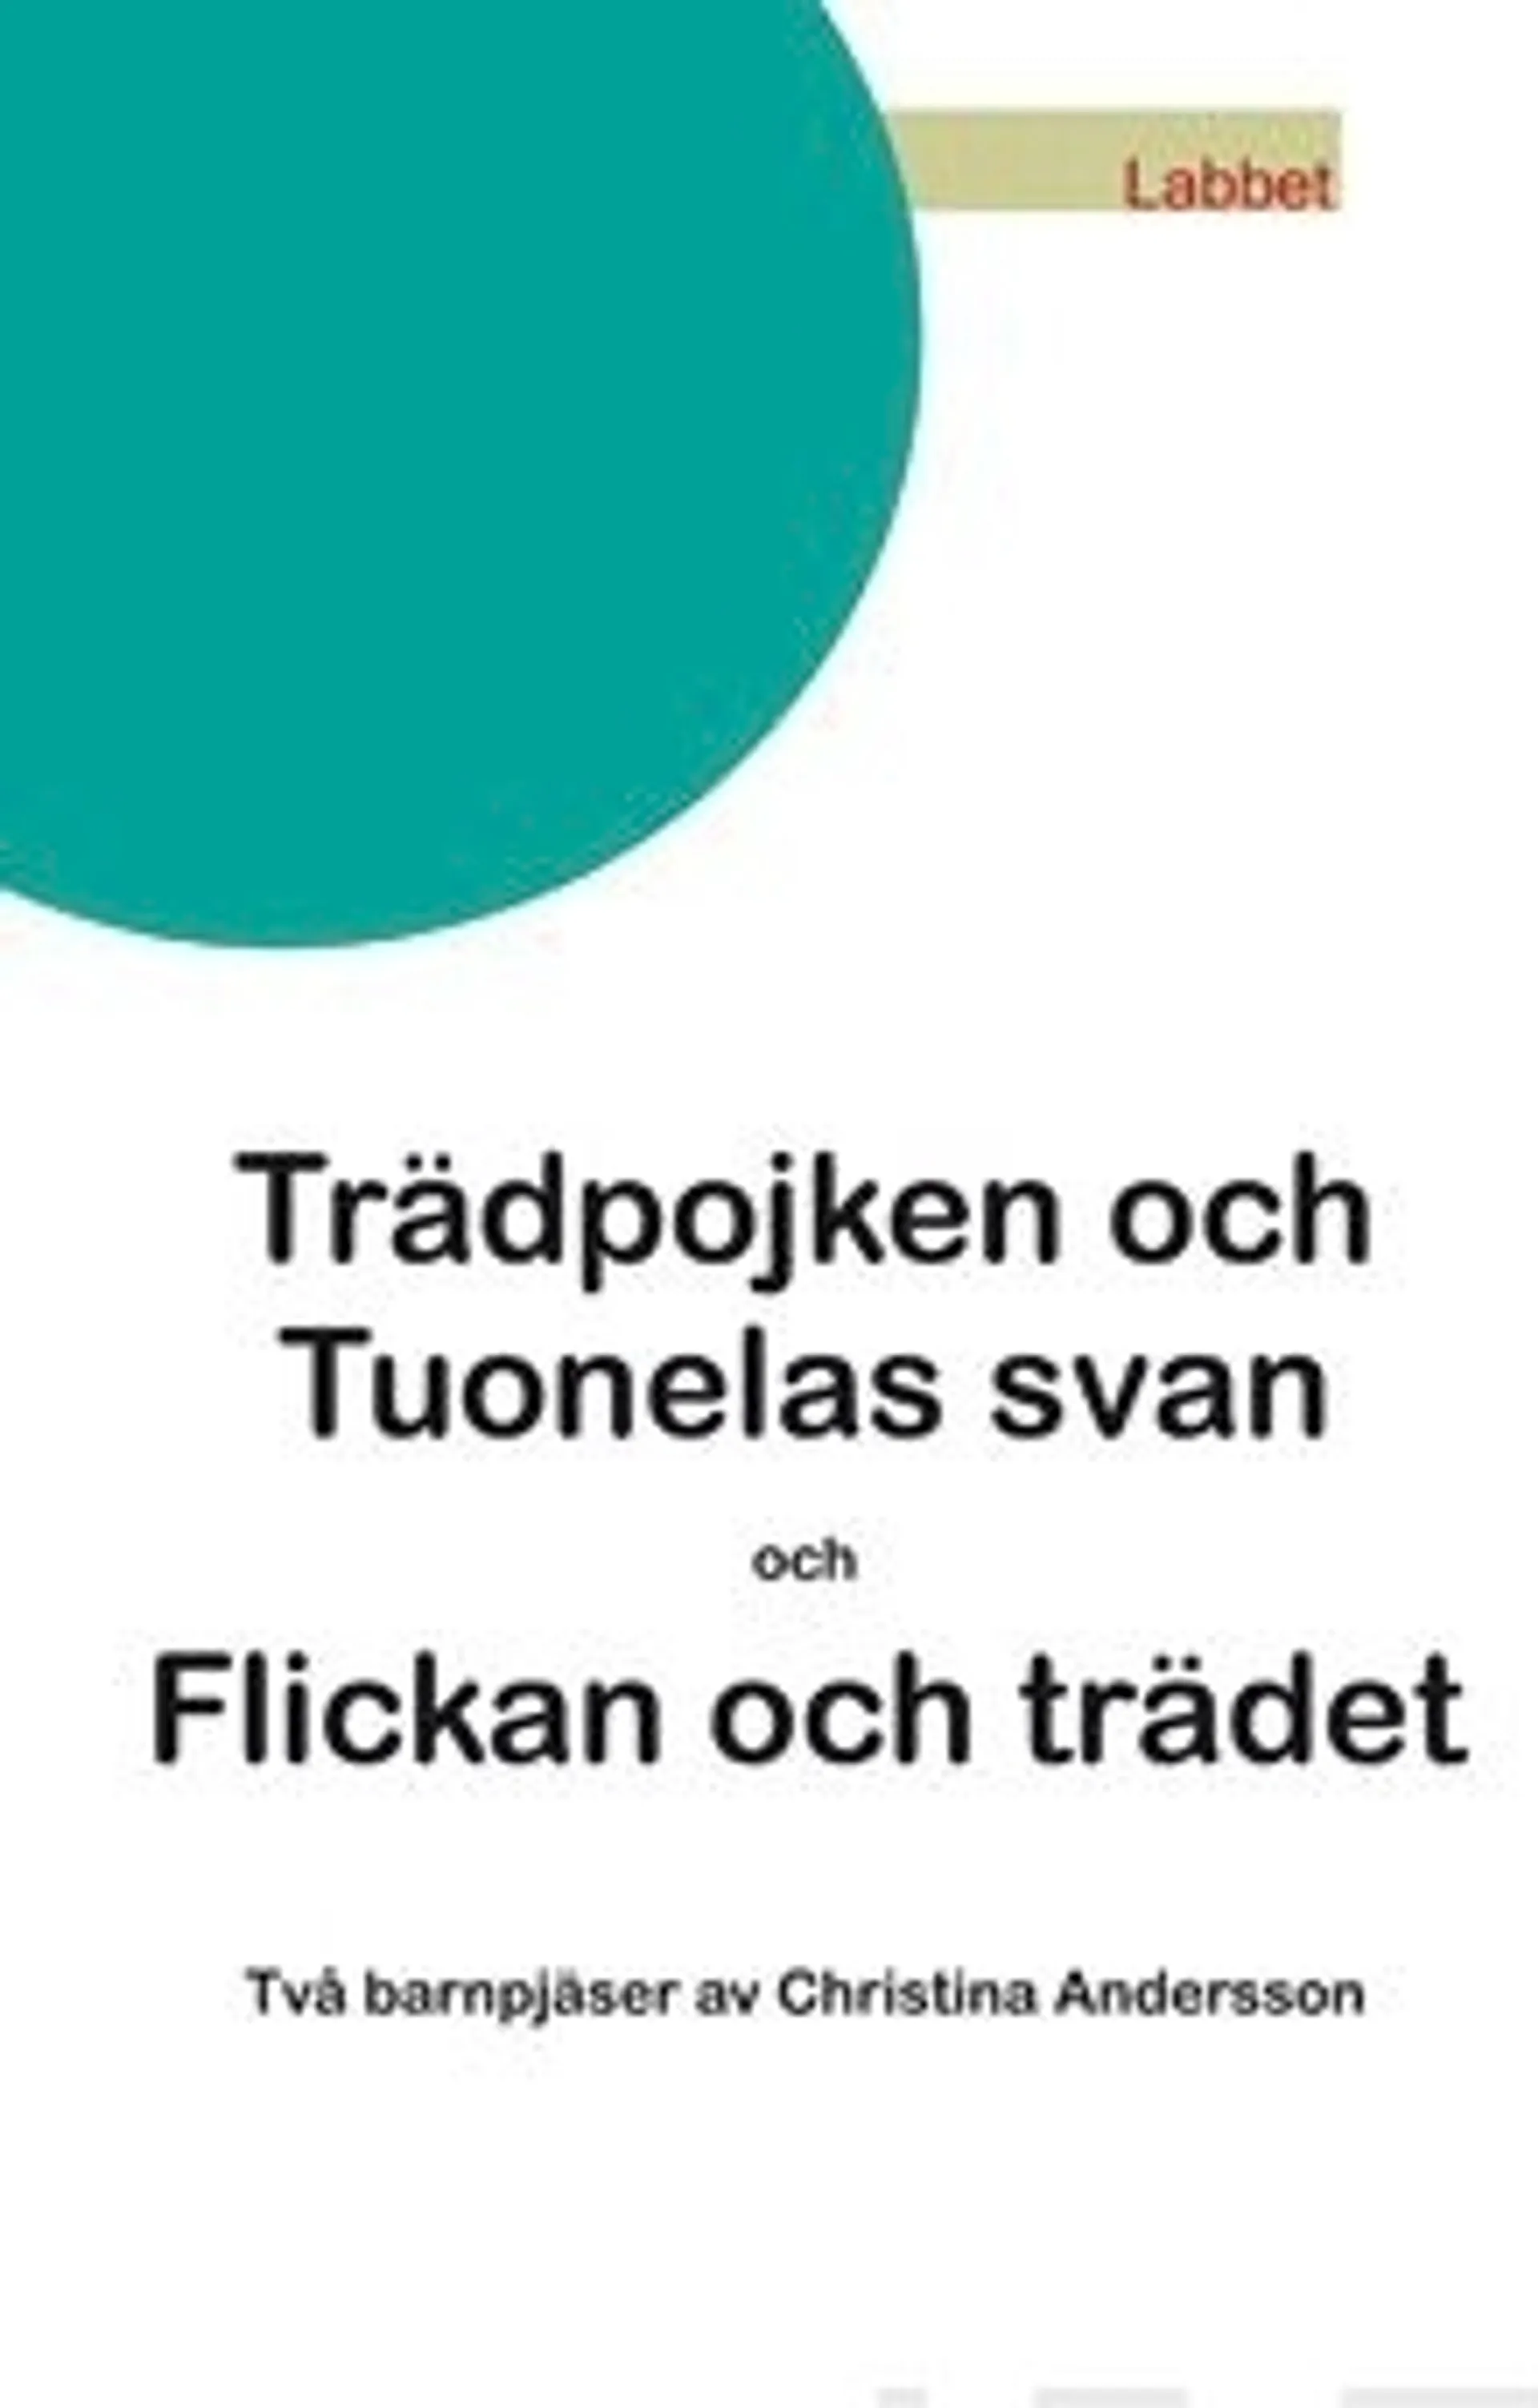 Andersson, Trädpojken och Tuonelas svan/Flickan och trädet